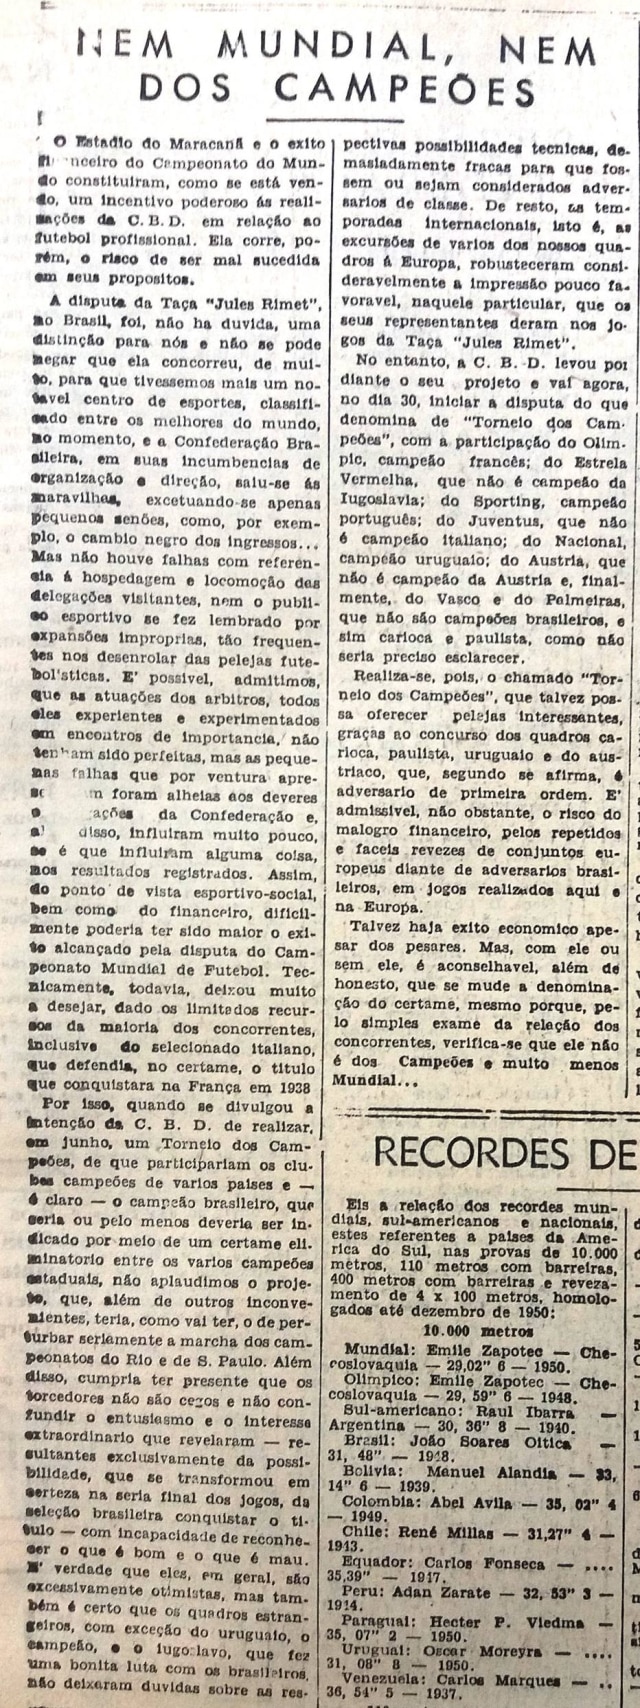 Cortes Resumo de Notícias 22/07 - 71 anos do Mundial de 1951